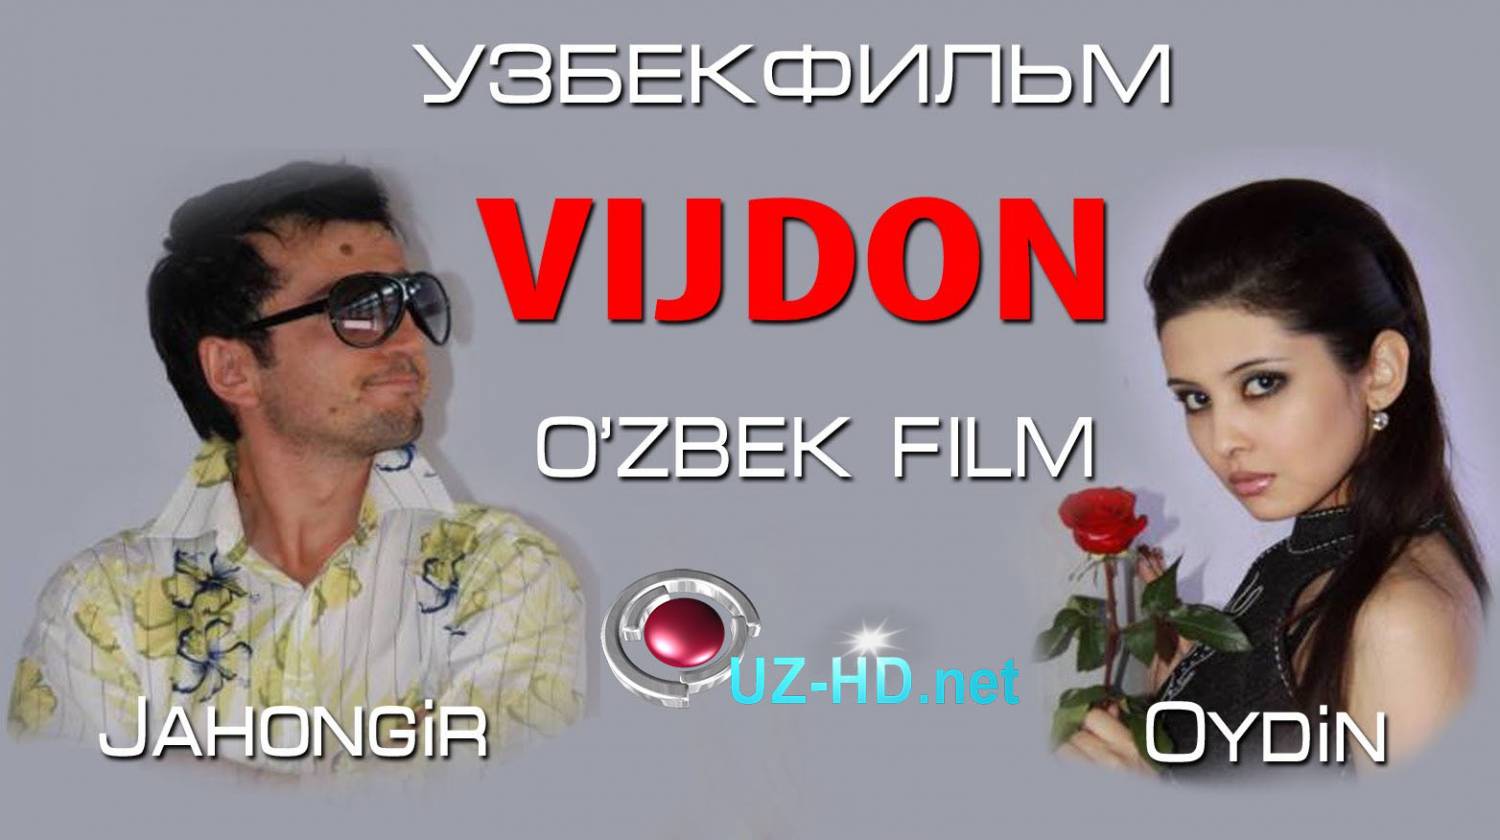 Vijdon (uzbek film) | Виждон (узбекфильм)